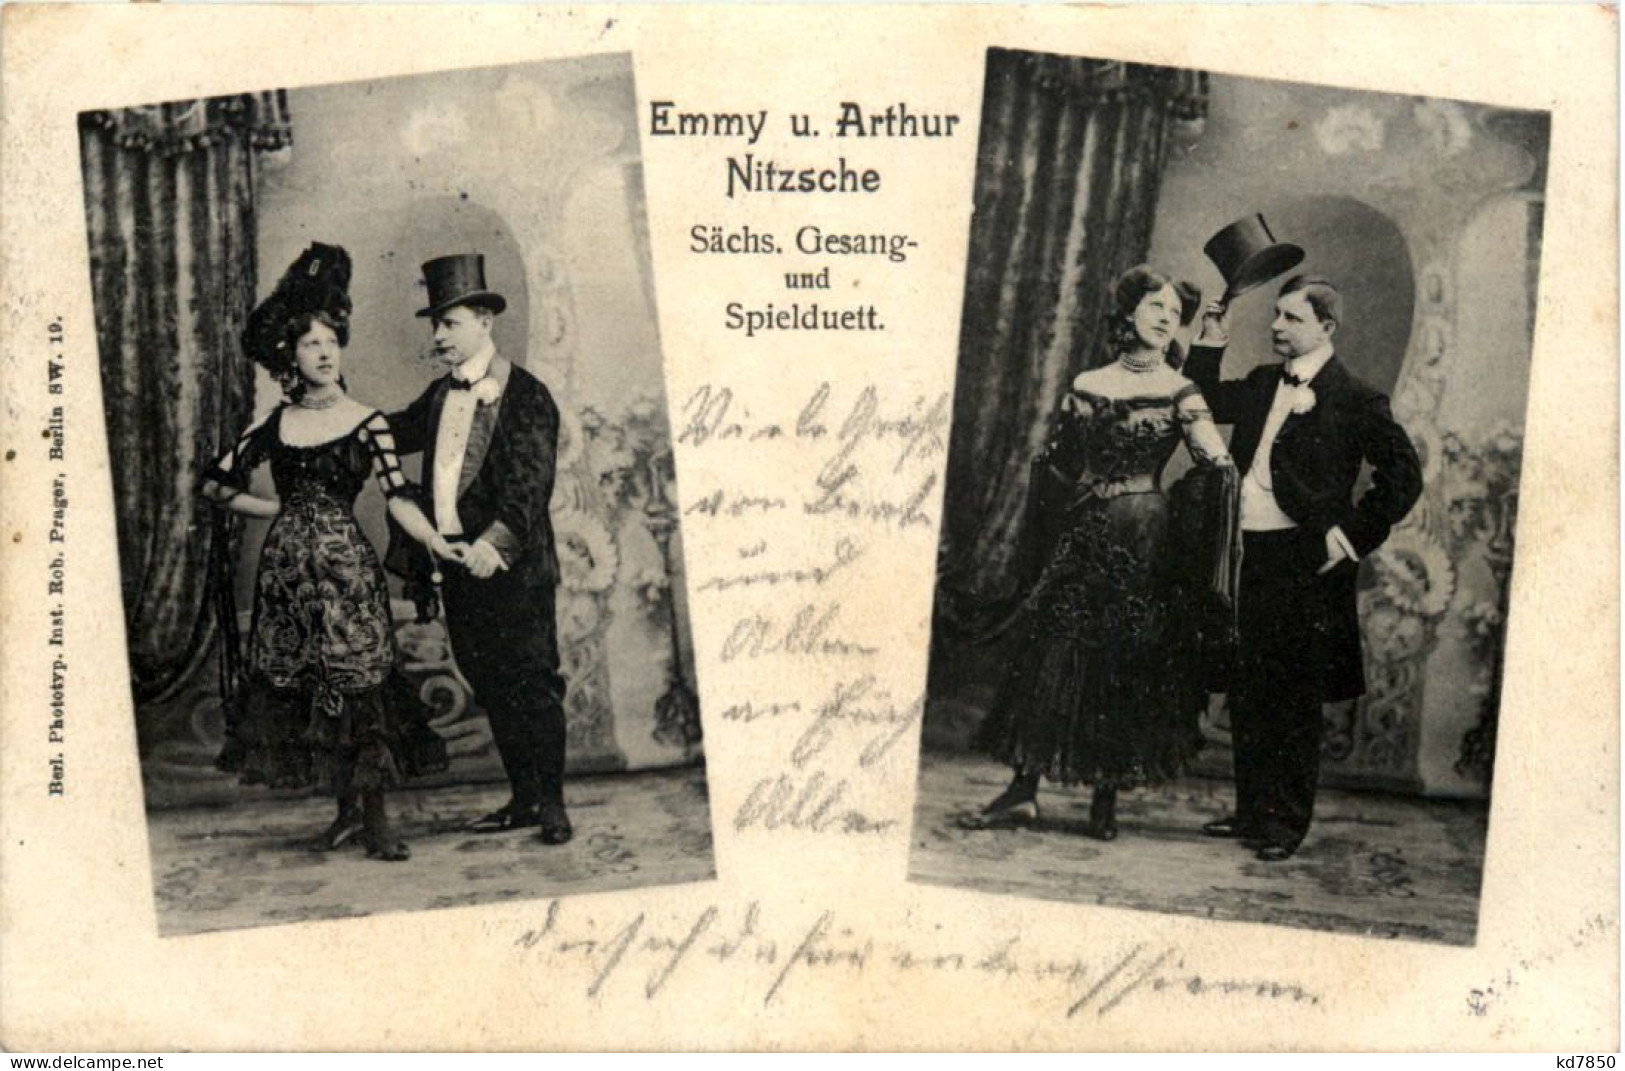 Emmy Und Arthur Nitzsche Gesang Und Spielduett - Circus